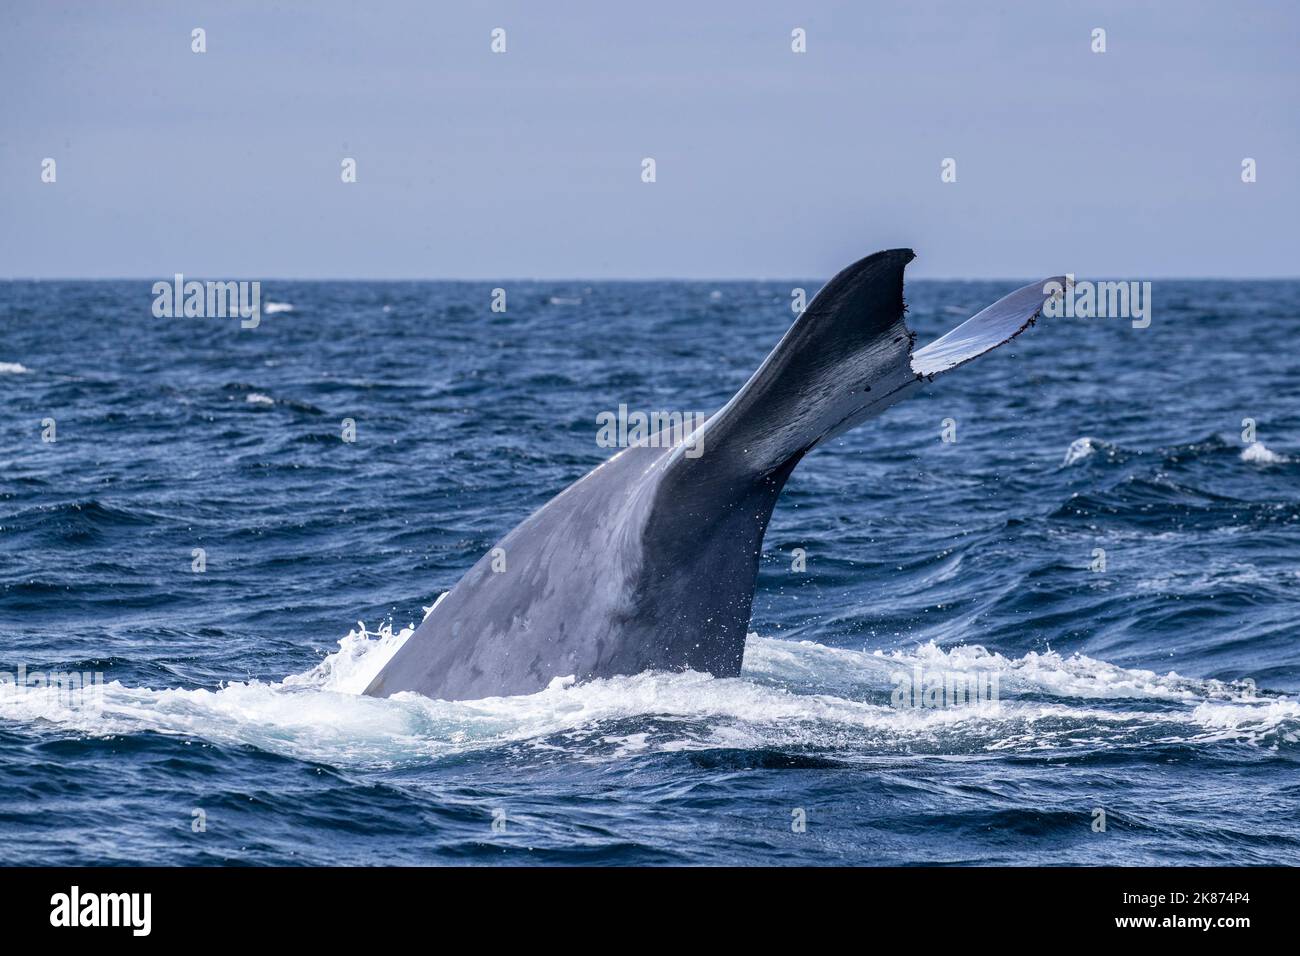 Une baleine bleue adulte (Balaenoptera musculus) fait de la plongée sous-marine dans le sanctuaire marin national de la baie de Monterey, Californie, États-Unis d'Amérique Banque D'Images